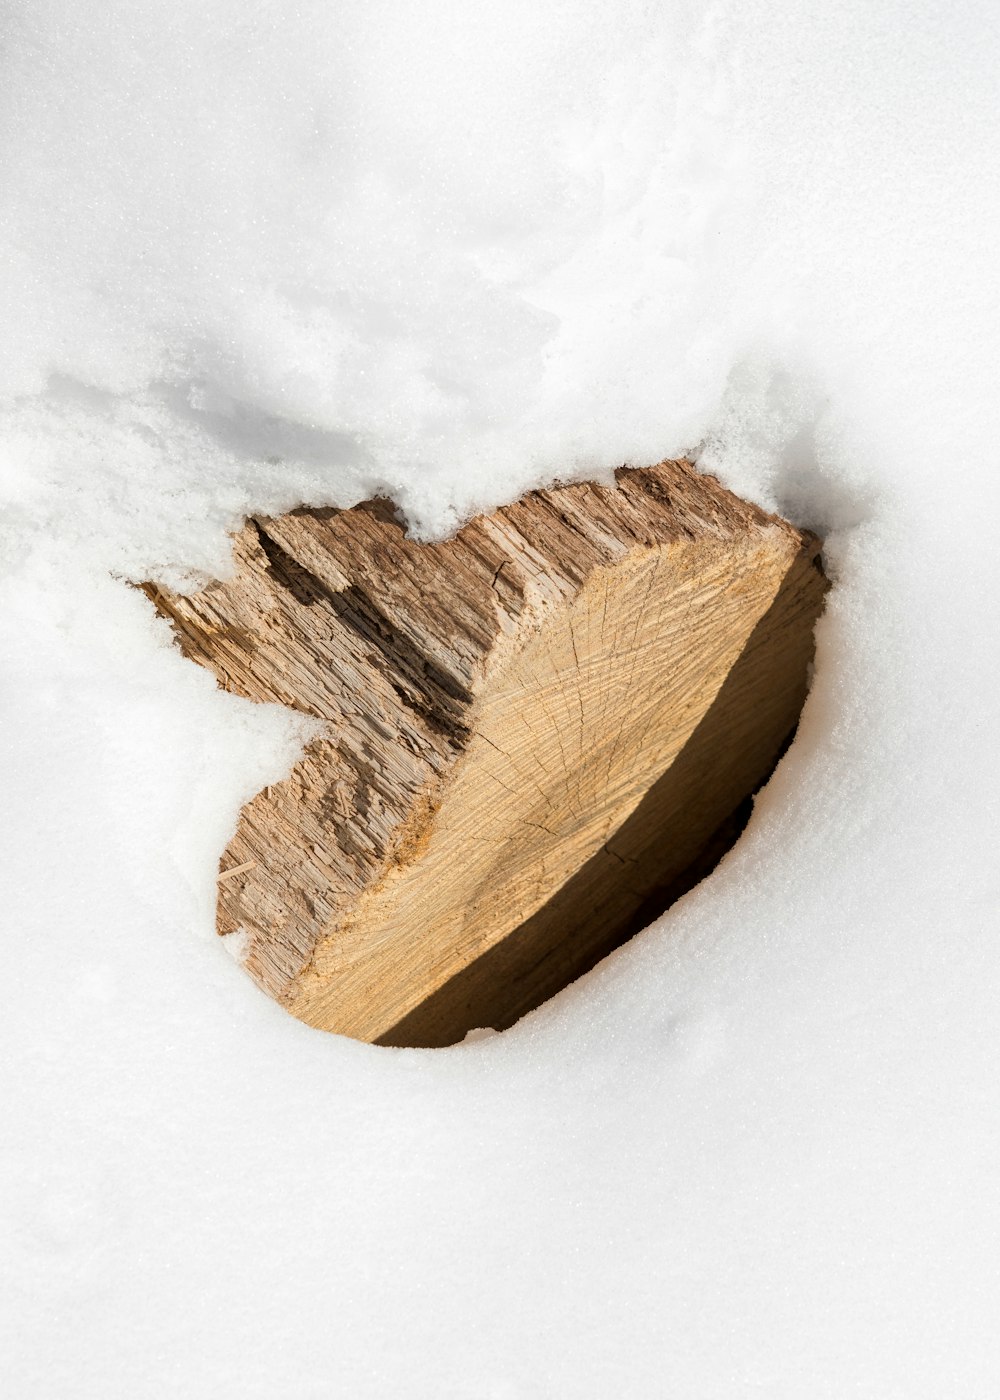 tronco de madeira marrom na neve branca